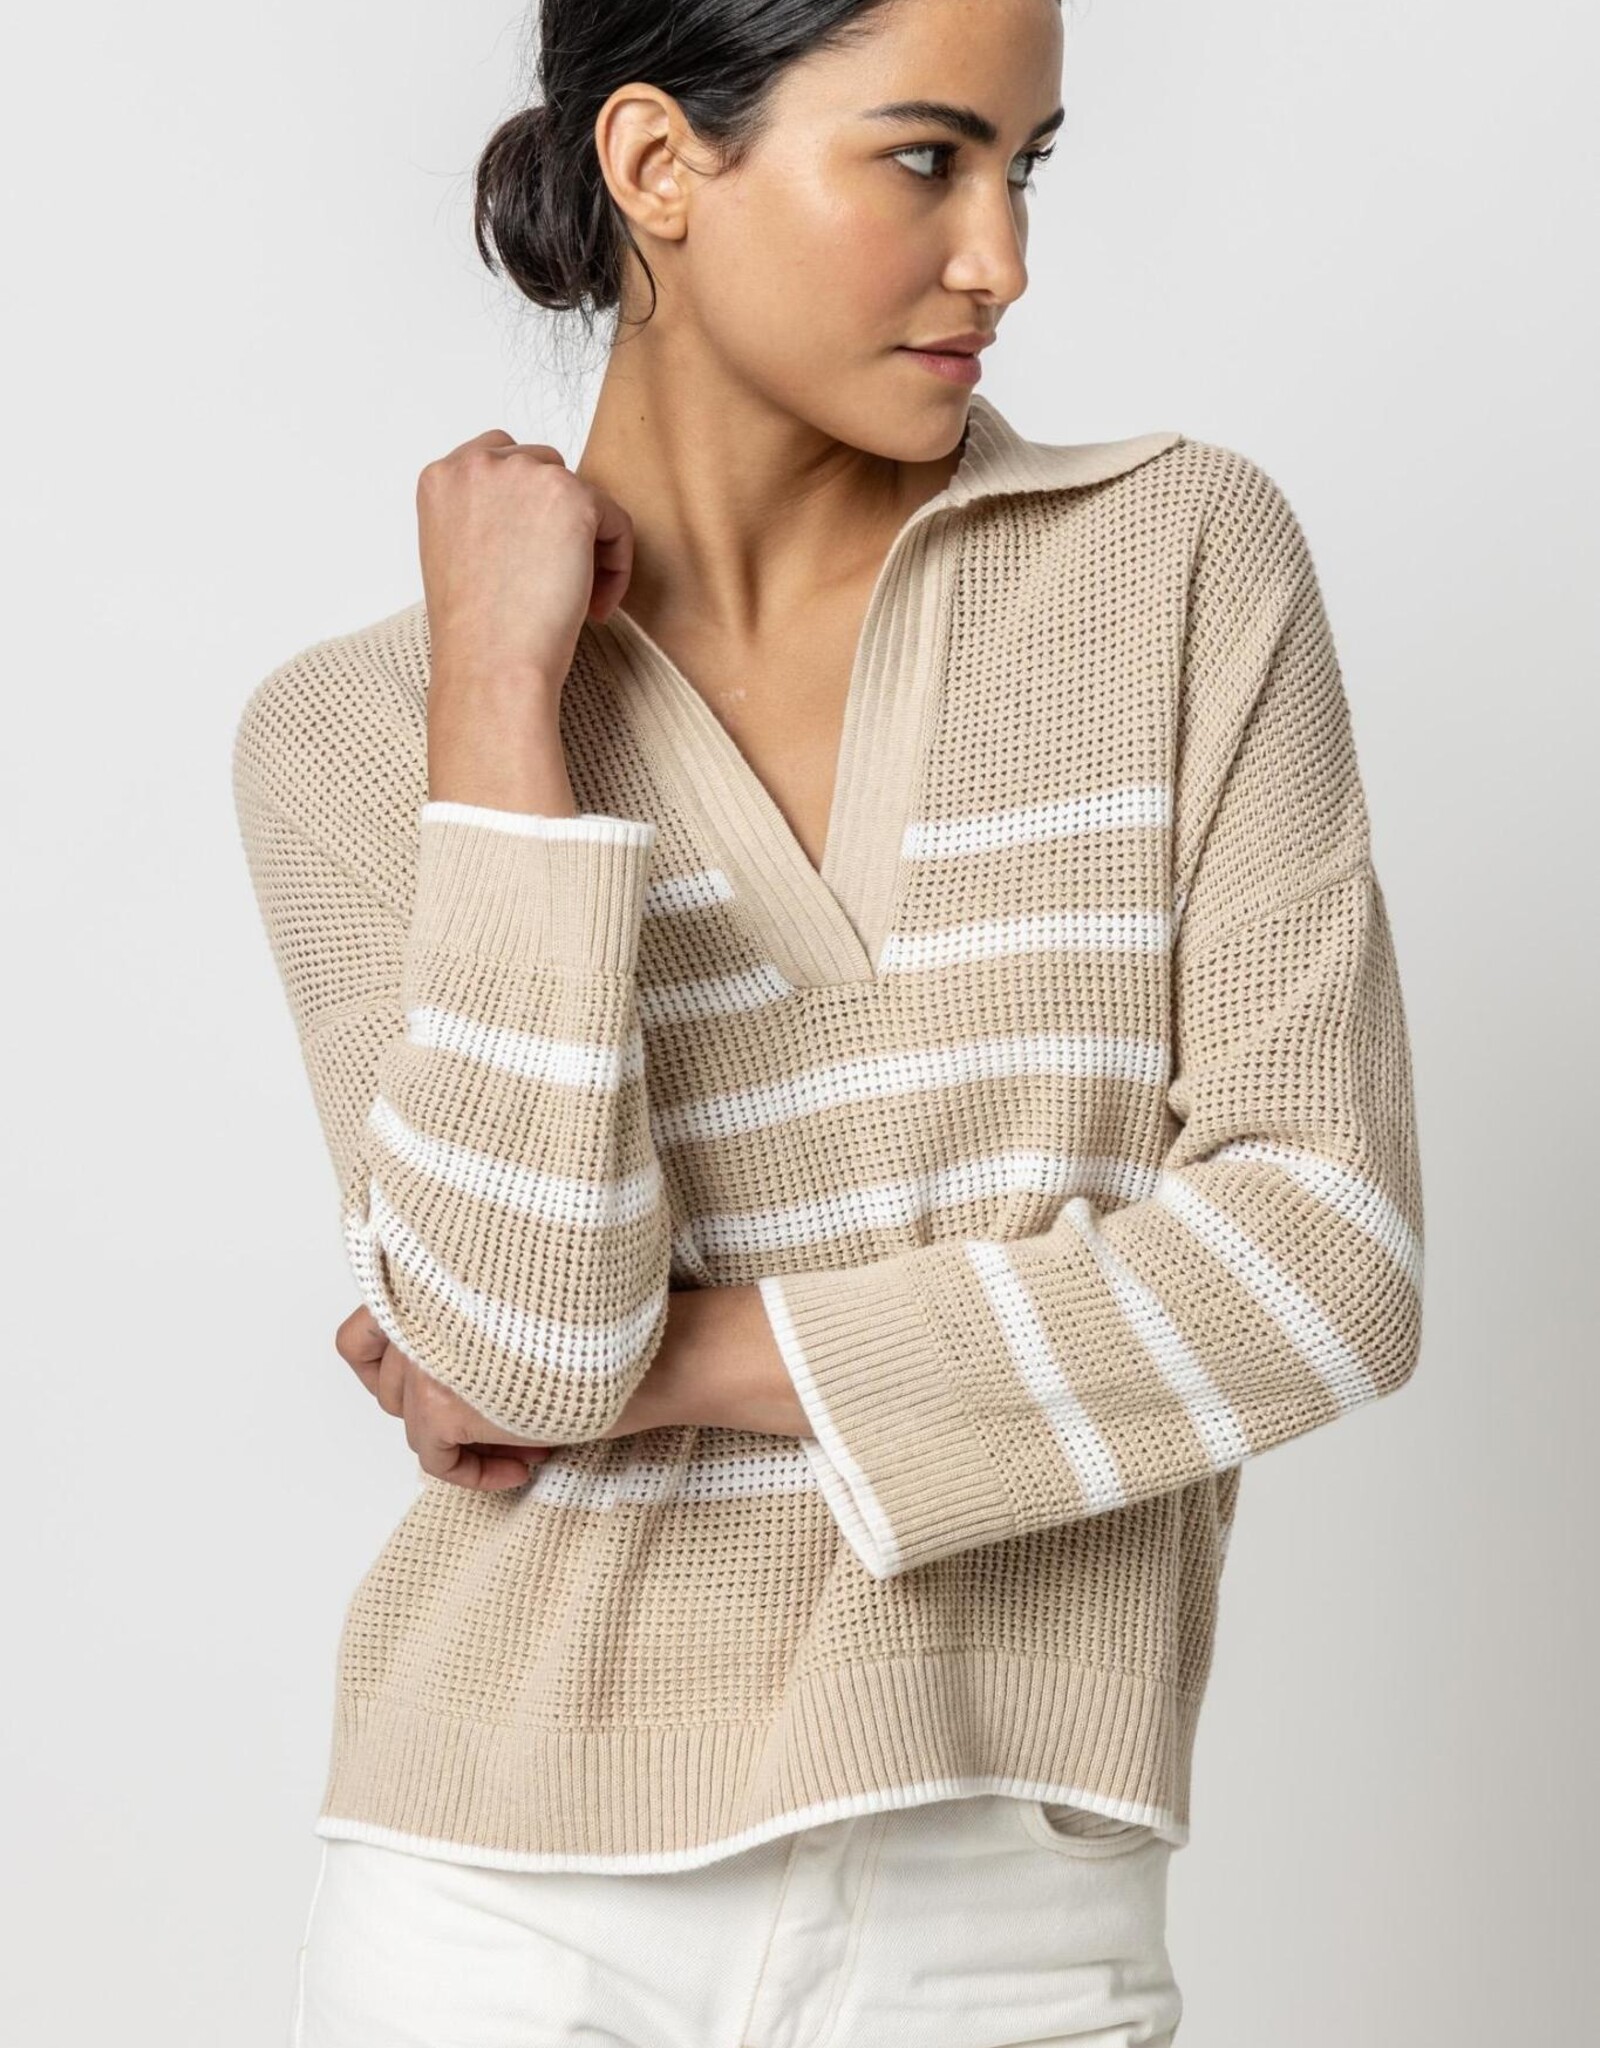 Lilla P Textured Stripe Polo Sweater